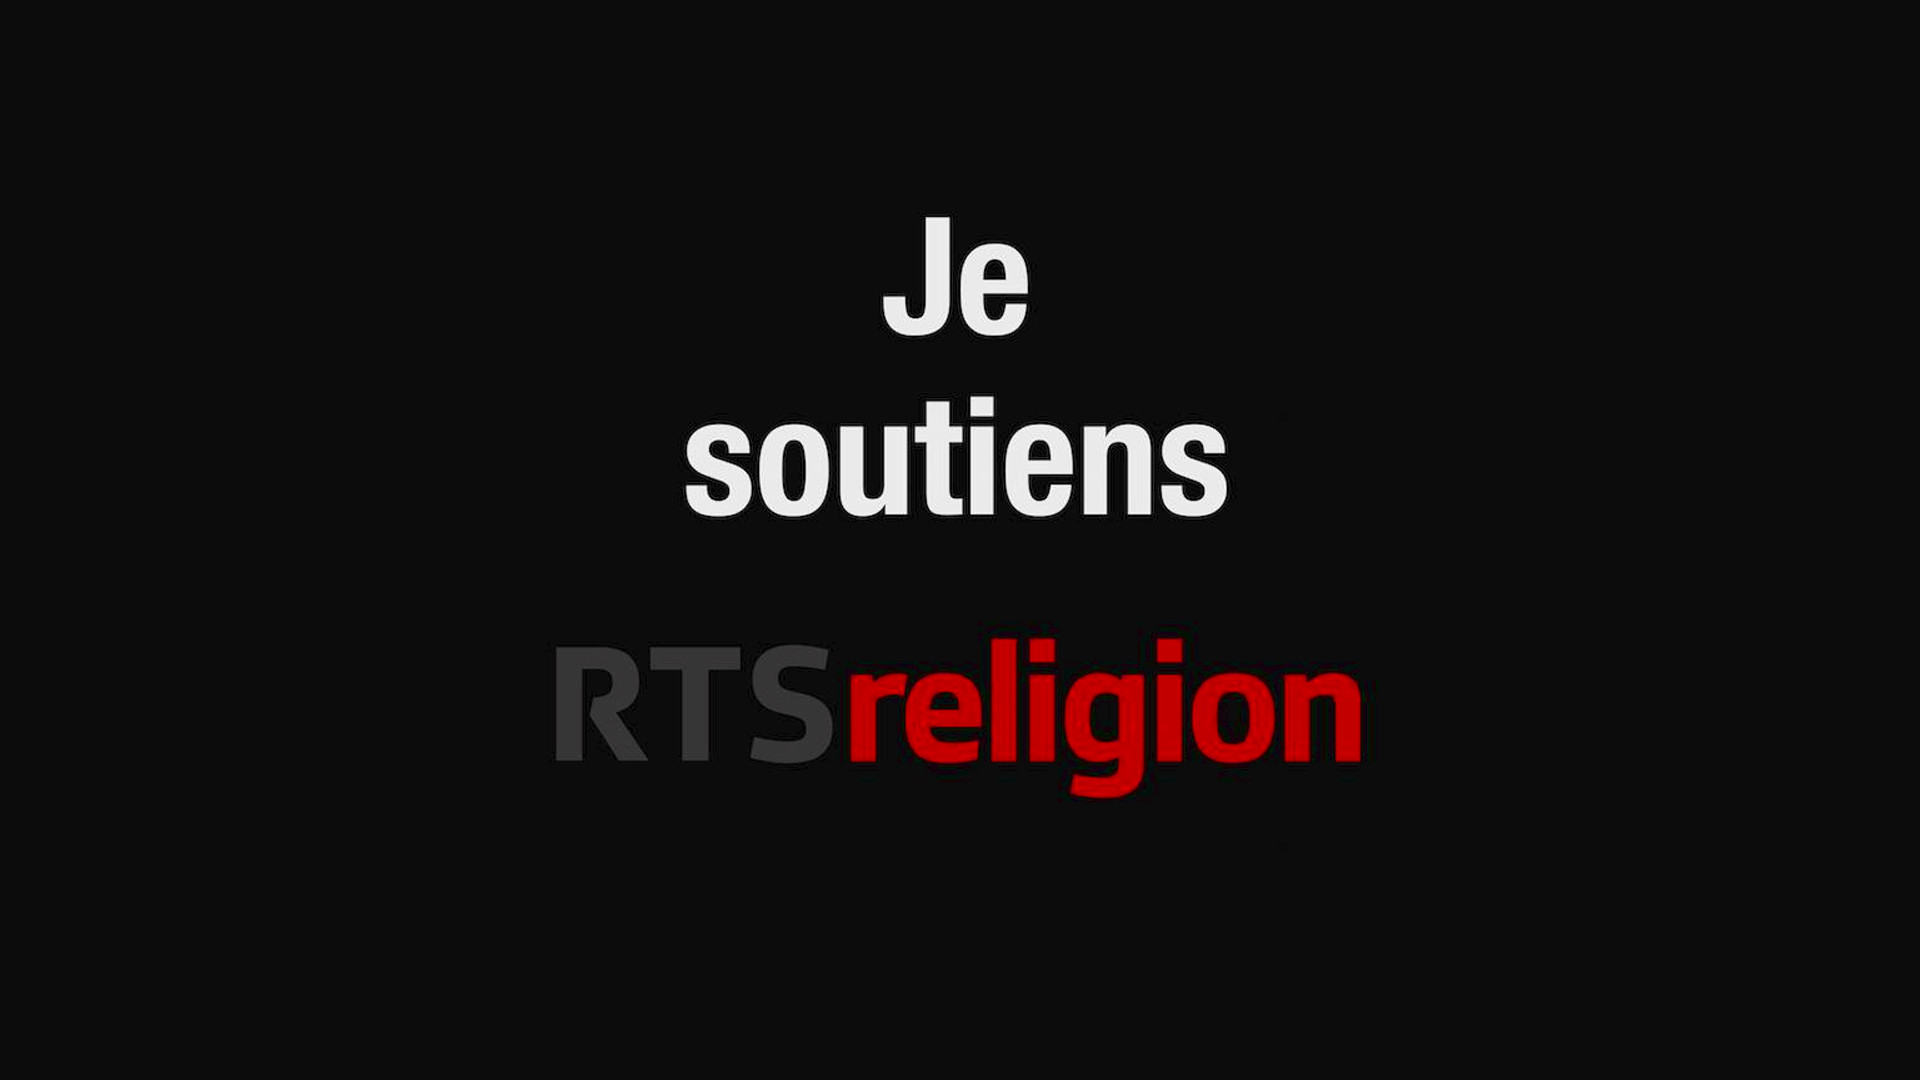 "Je soutiens RTSreligion", une image qui circule actuellement sur les réseaux sociaux (Photo: dr)